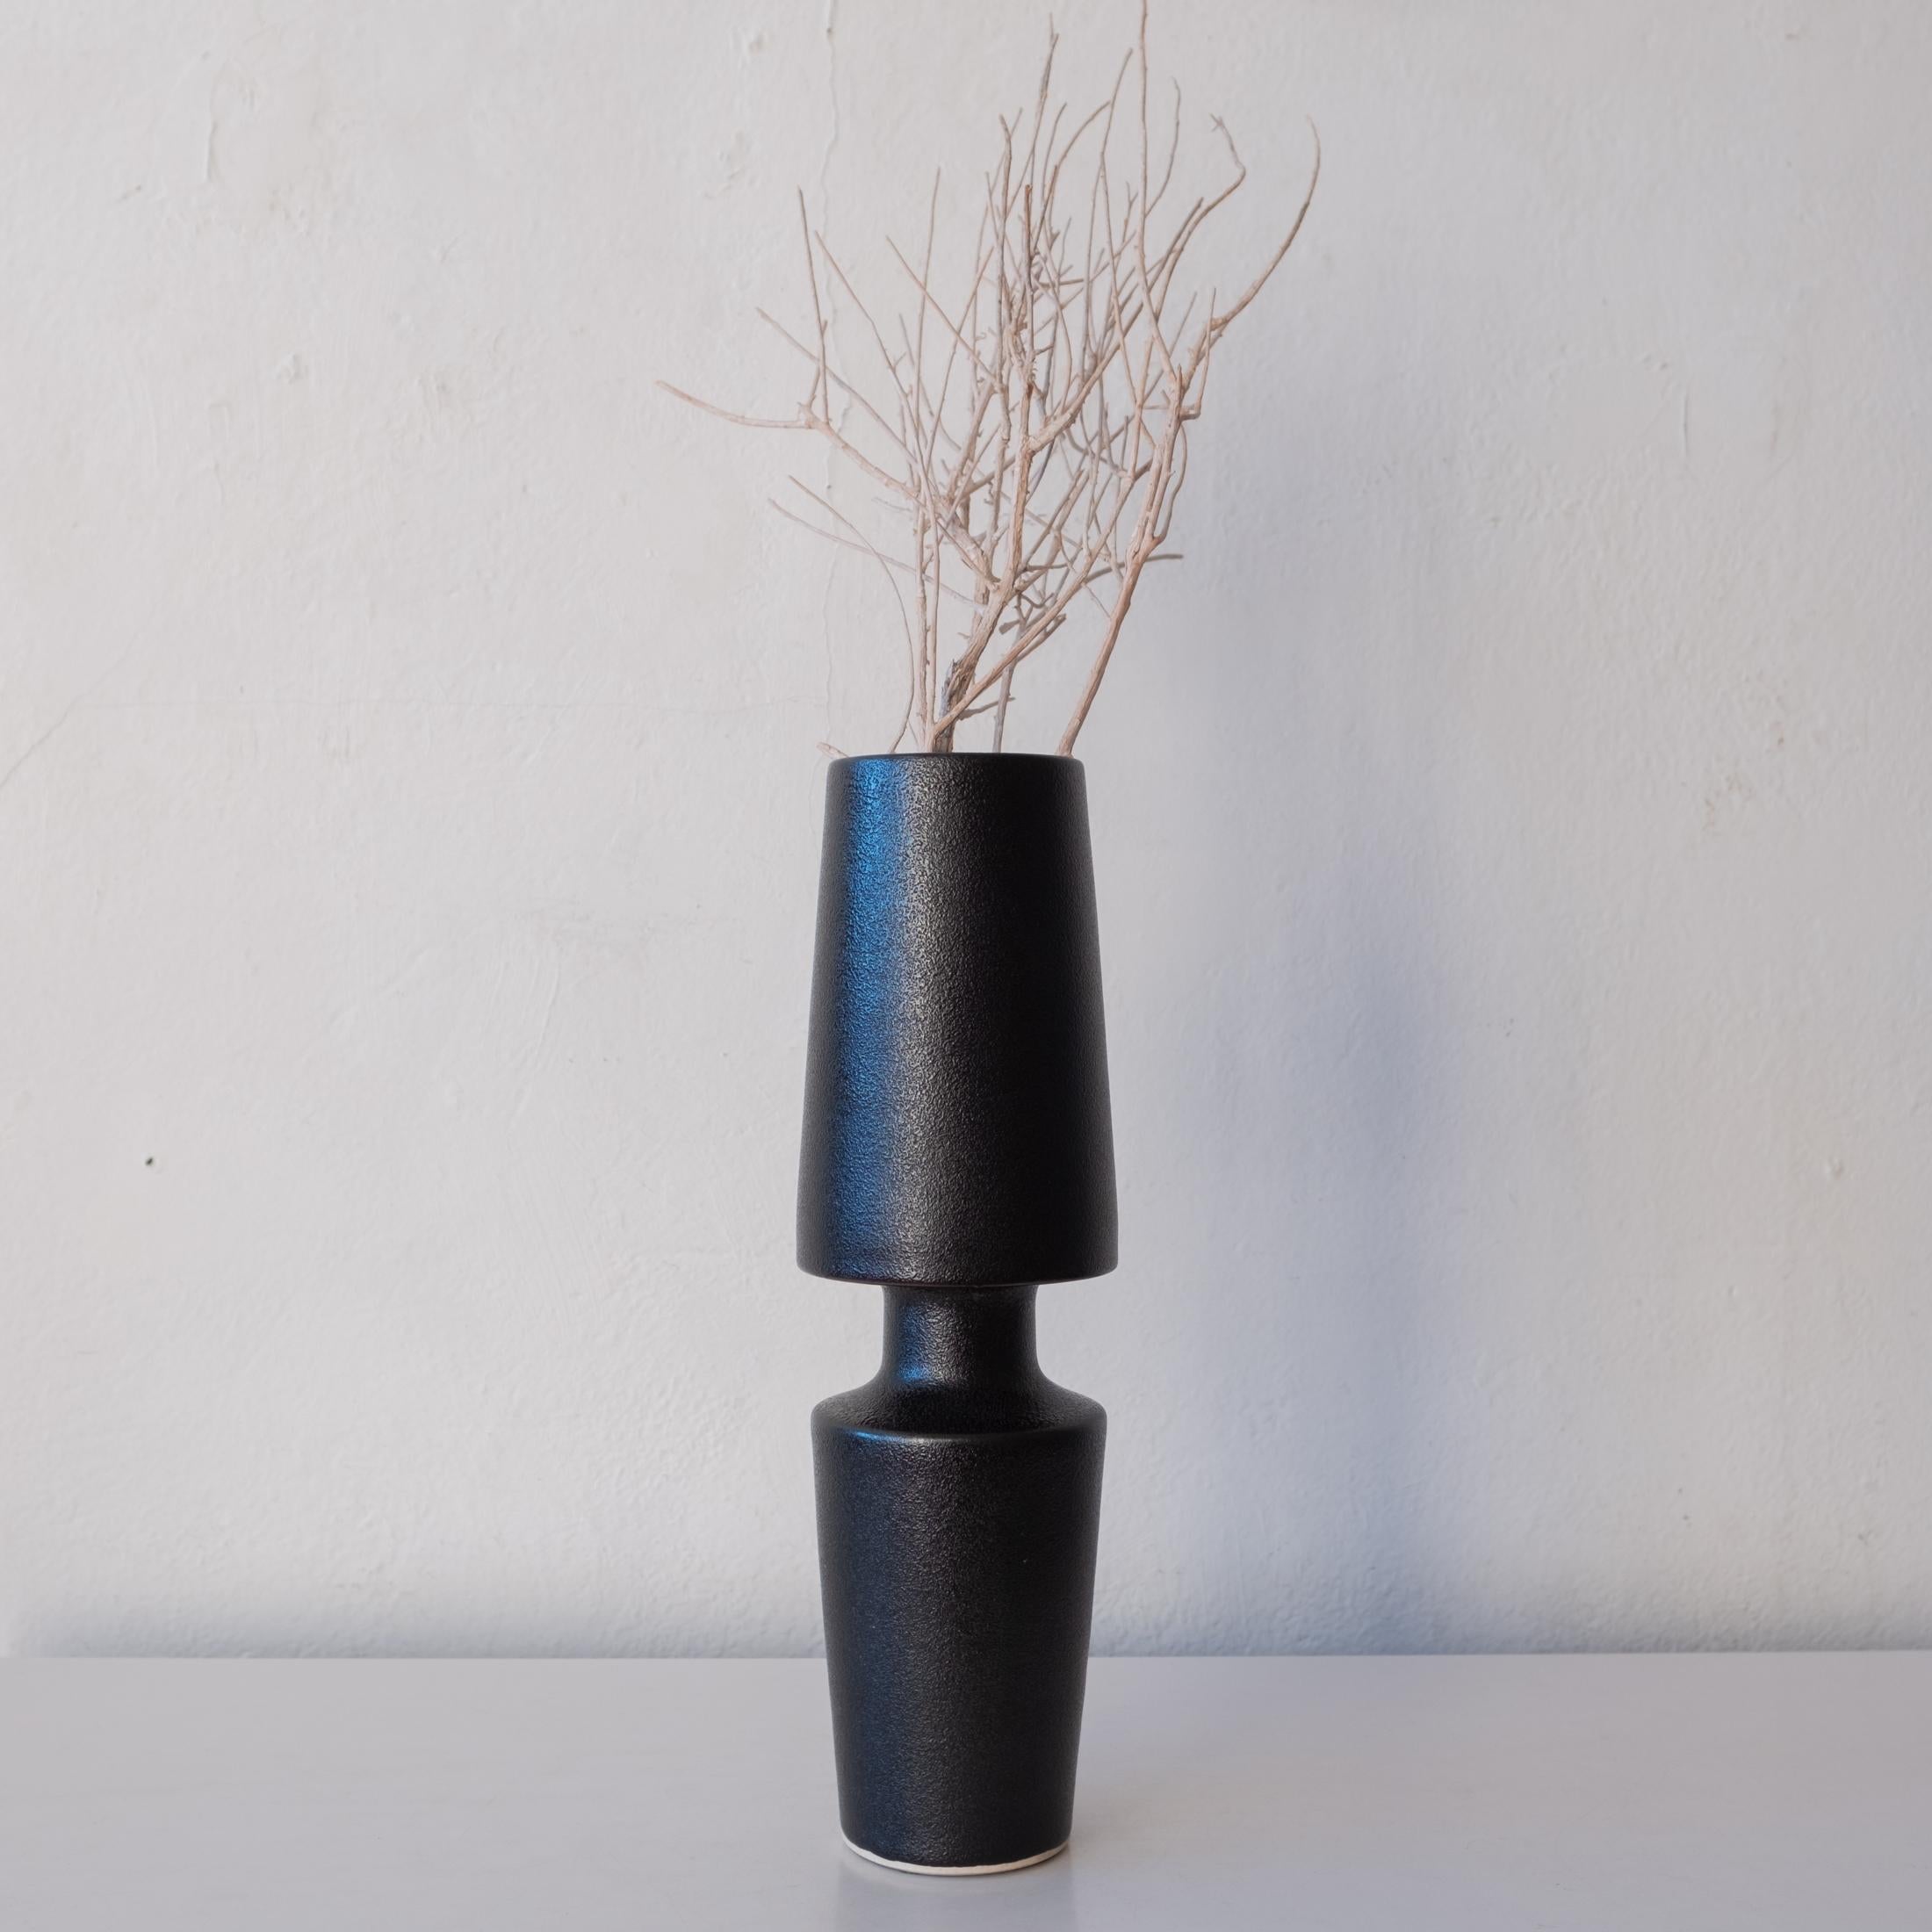 Modernistische Ikebana-Vase mit strukturierter Oberfläche. Ein Qualitätsstück mit gutem Gewicht und fachmännischer Verarbeitung. Japan, 1960er Jahre.